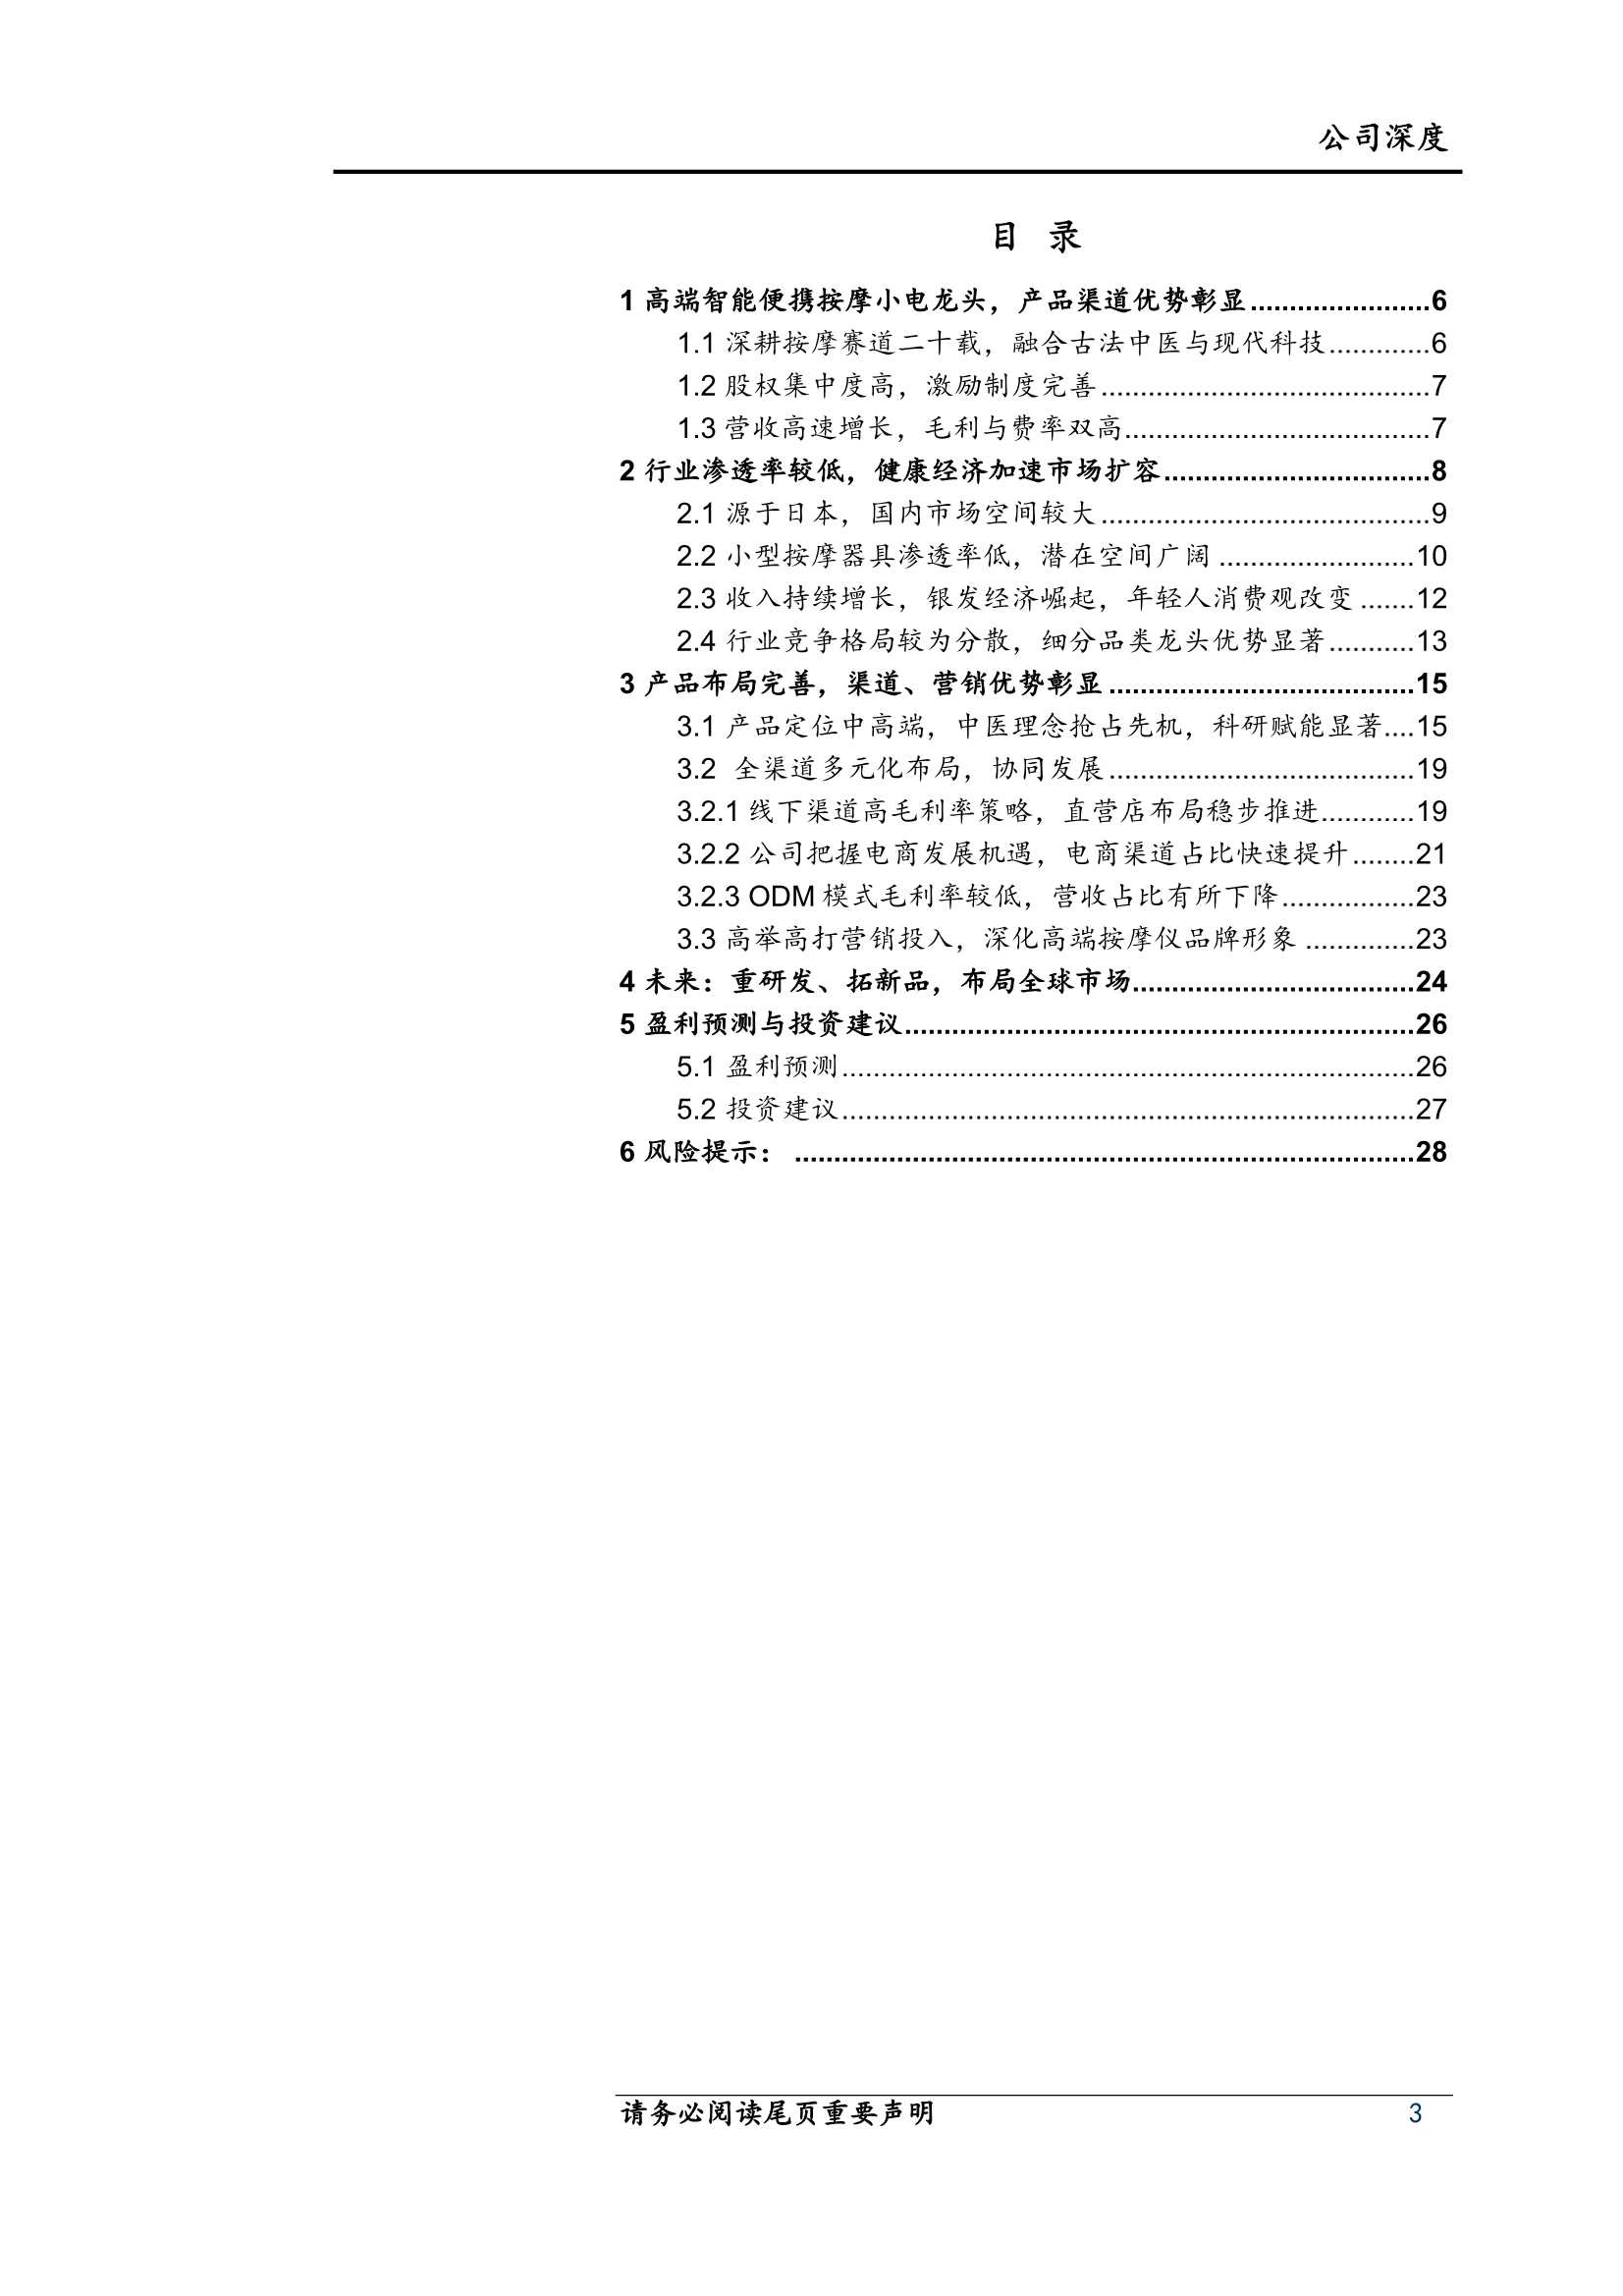 上海证券-倍轻松-688793-高端按摩小电龙头，渠道品类加速扩容-20220126-30页